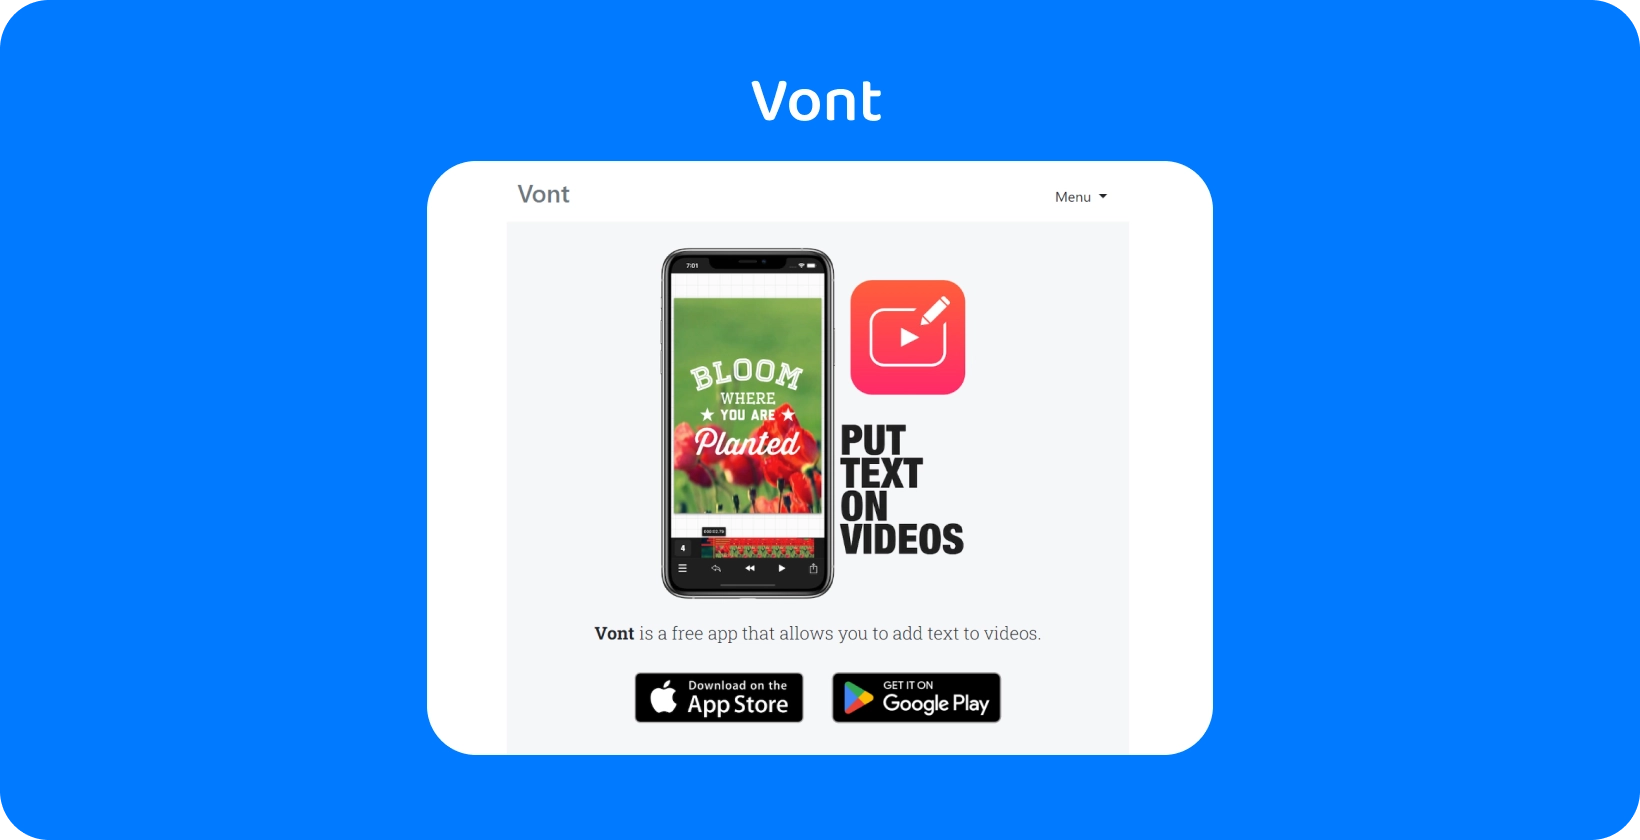 Smartphone Vont zobrazující rozhraní aplikace, zdůrazňující jeho funkci pro přidávání textu k videím, který je k dispozici na App Store a Google Play